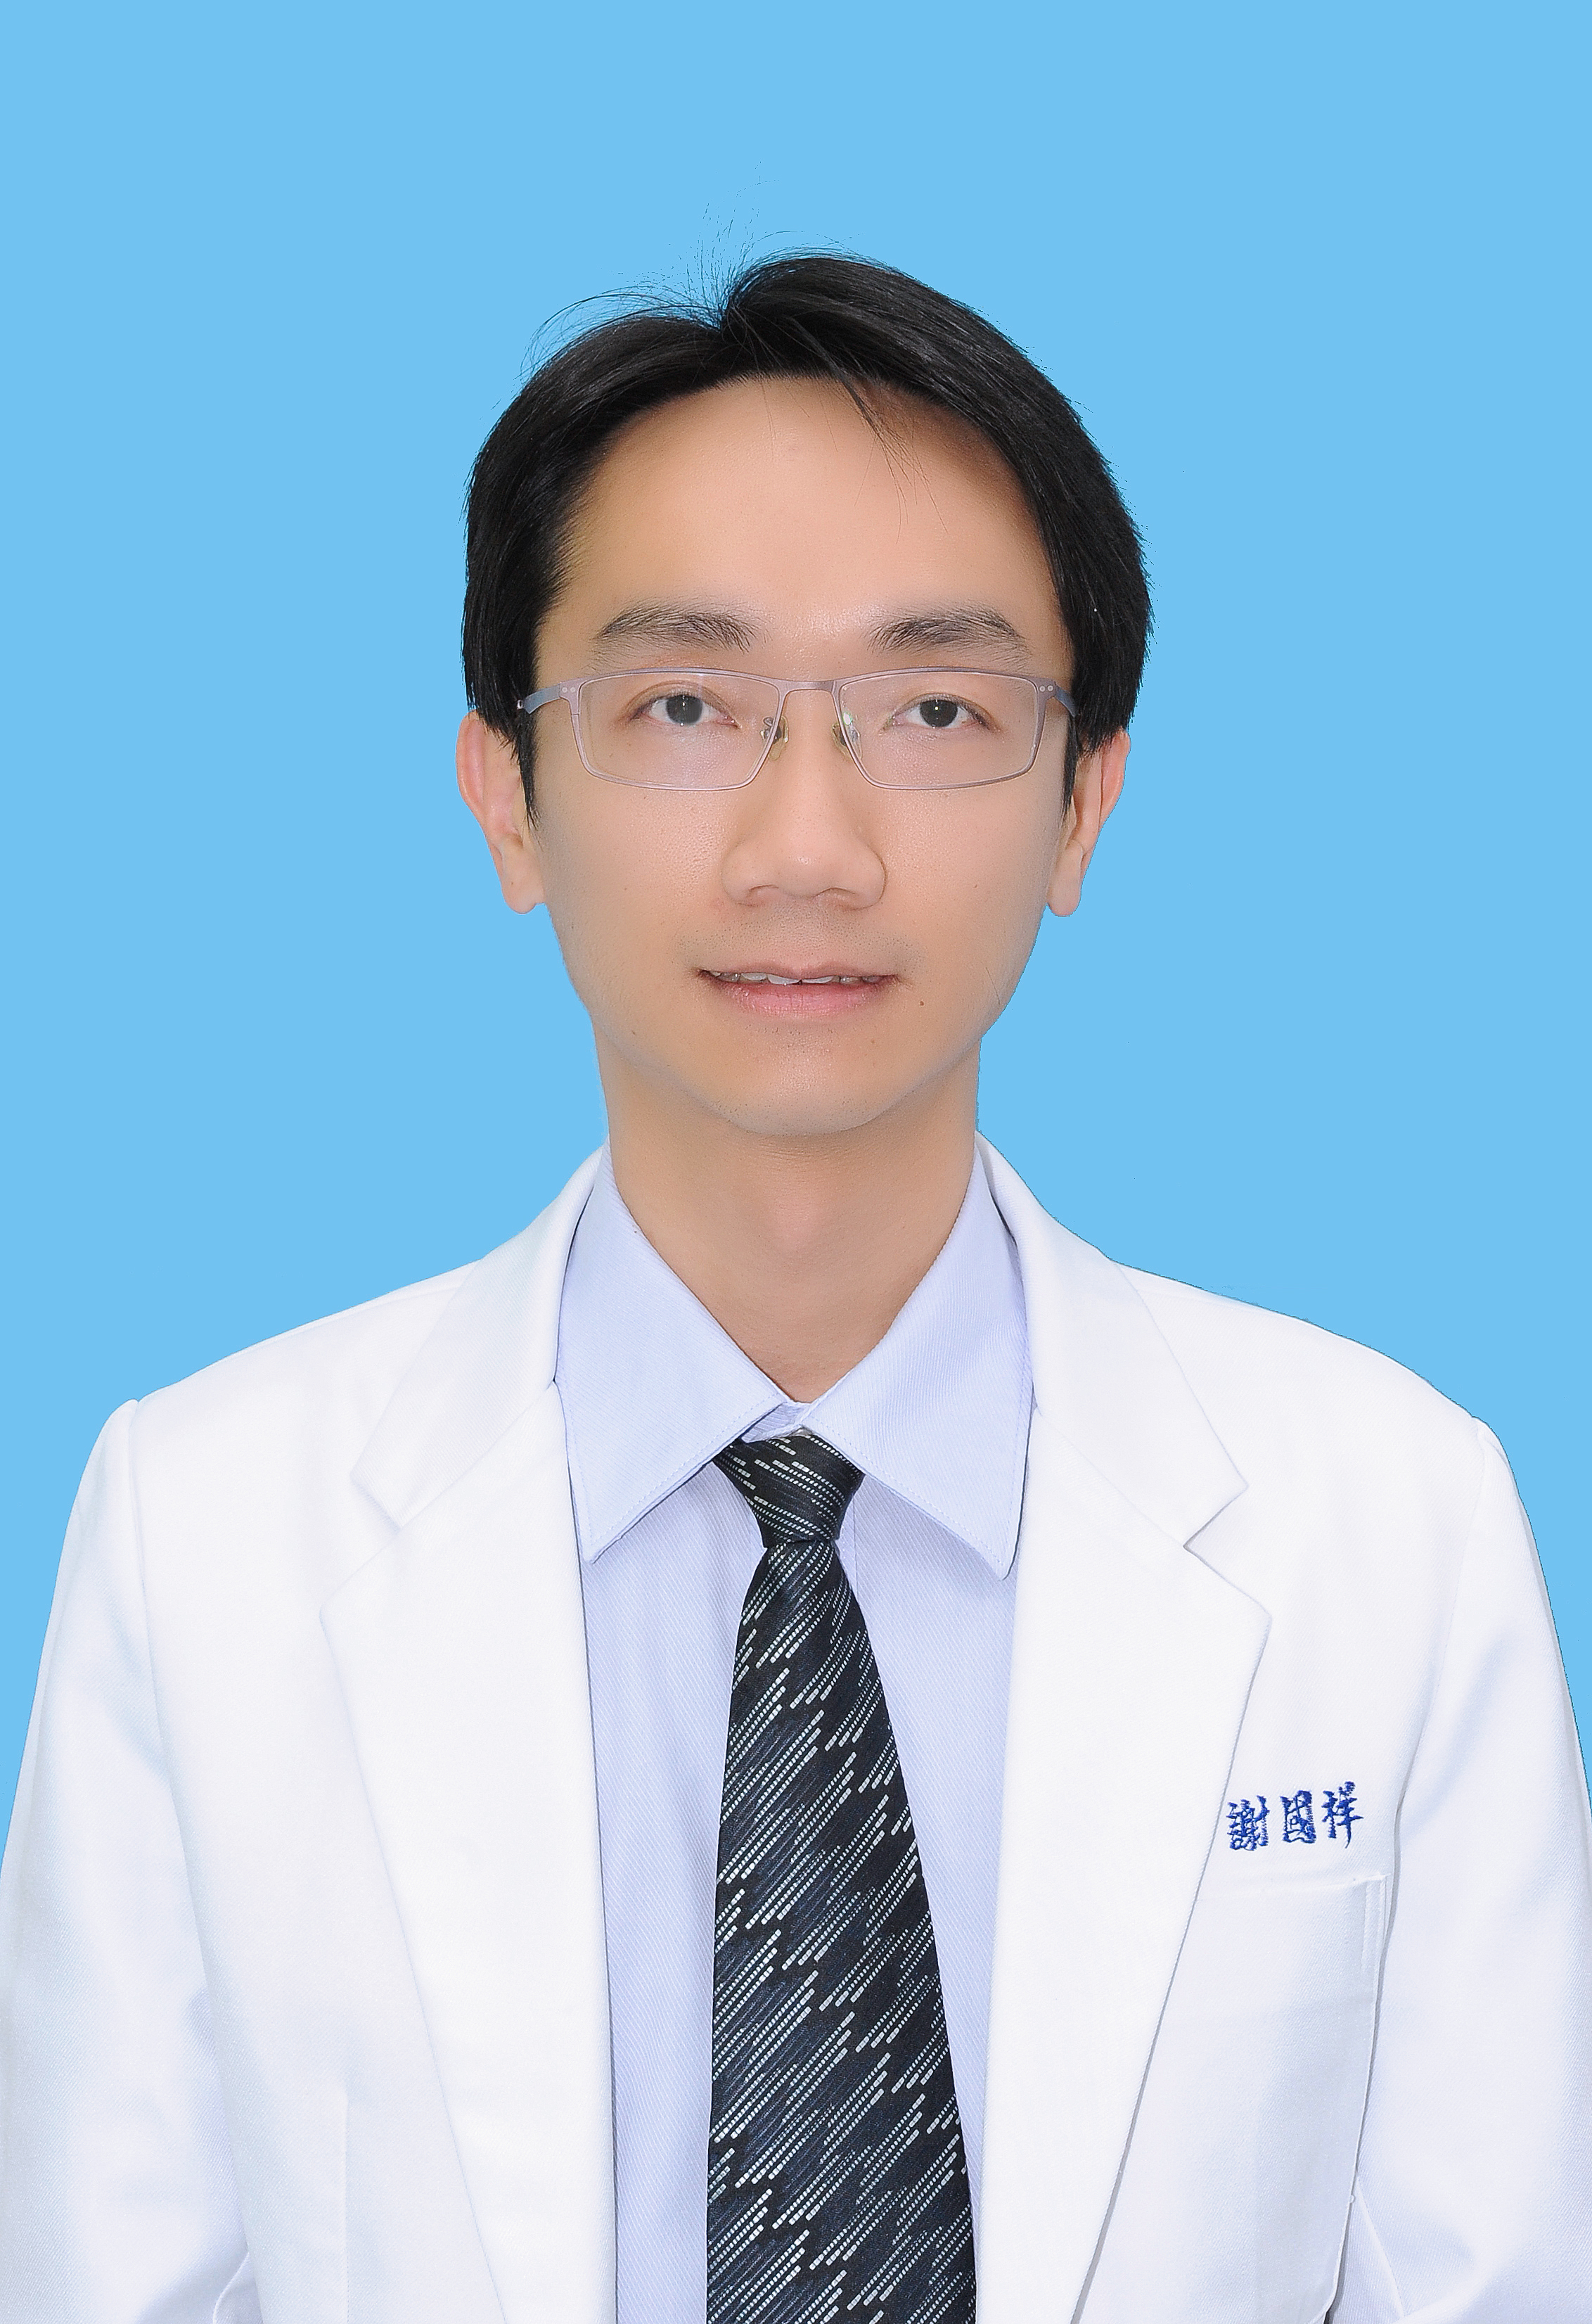 Kao-Shiang Shieh MD Division of Neonatology